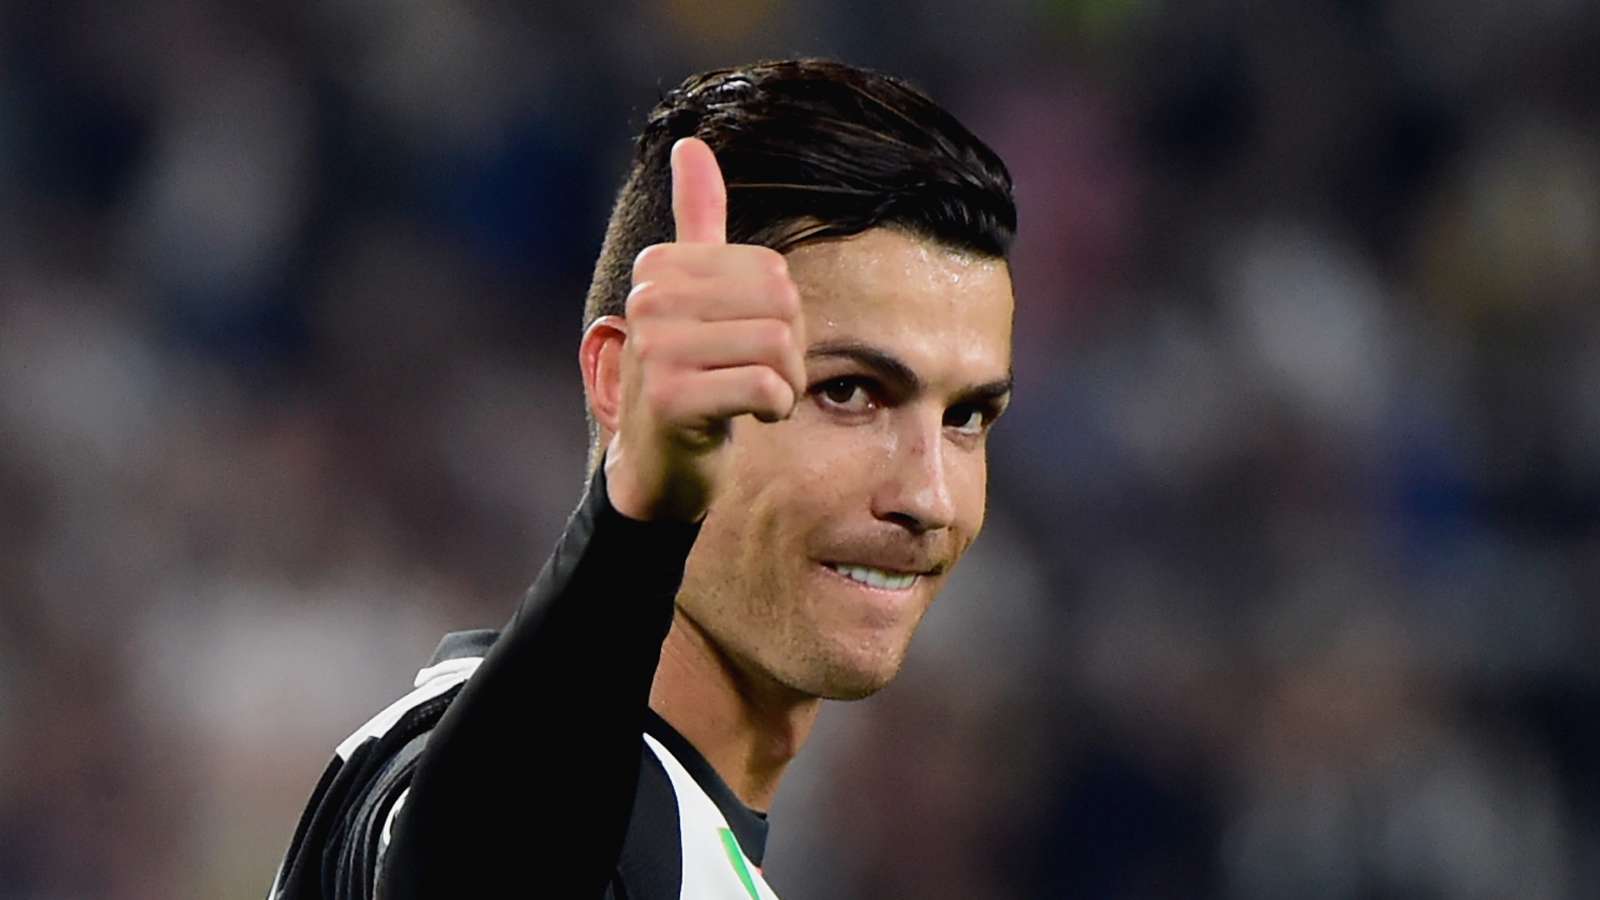 “Nuk jemi si Ronaldo”, futbollisti i Serie B flet për krizën financiare për shkak COVID-19